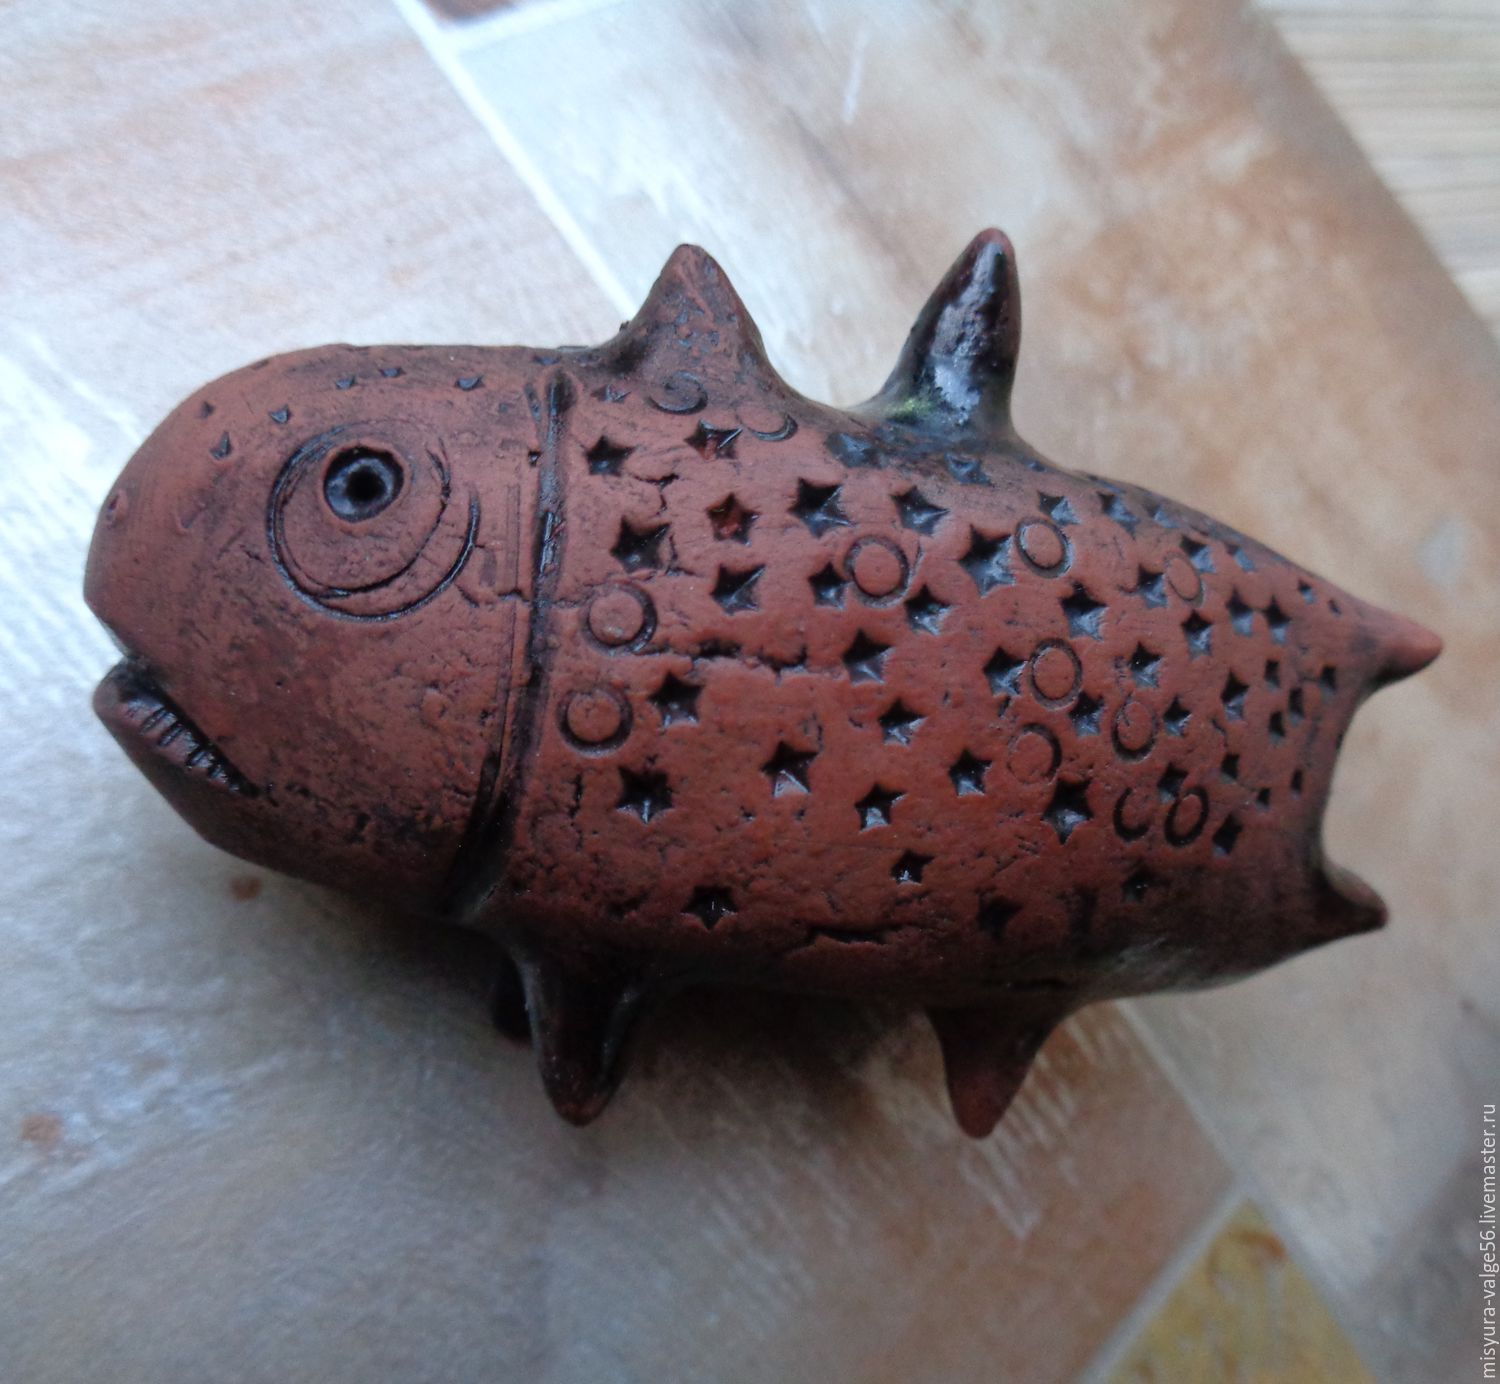 Фигурка из керамики ручной работы.Чёрная глазурь.Рыбка